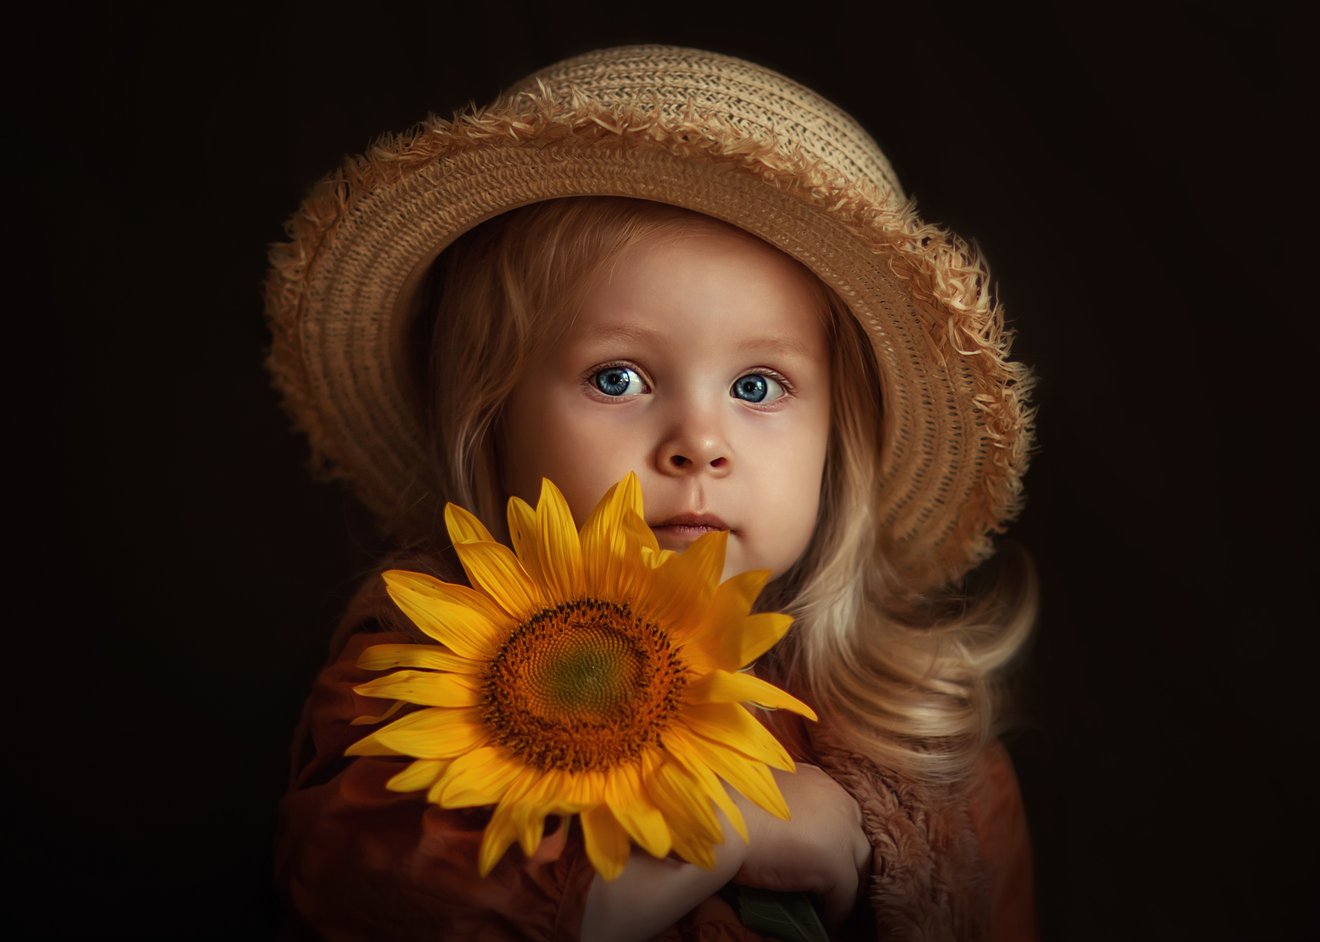 Sunflower girl.-Seed Nft